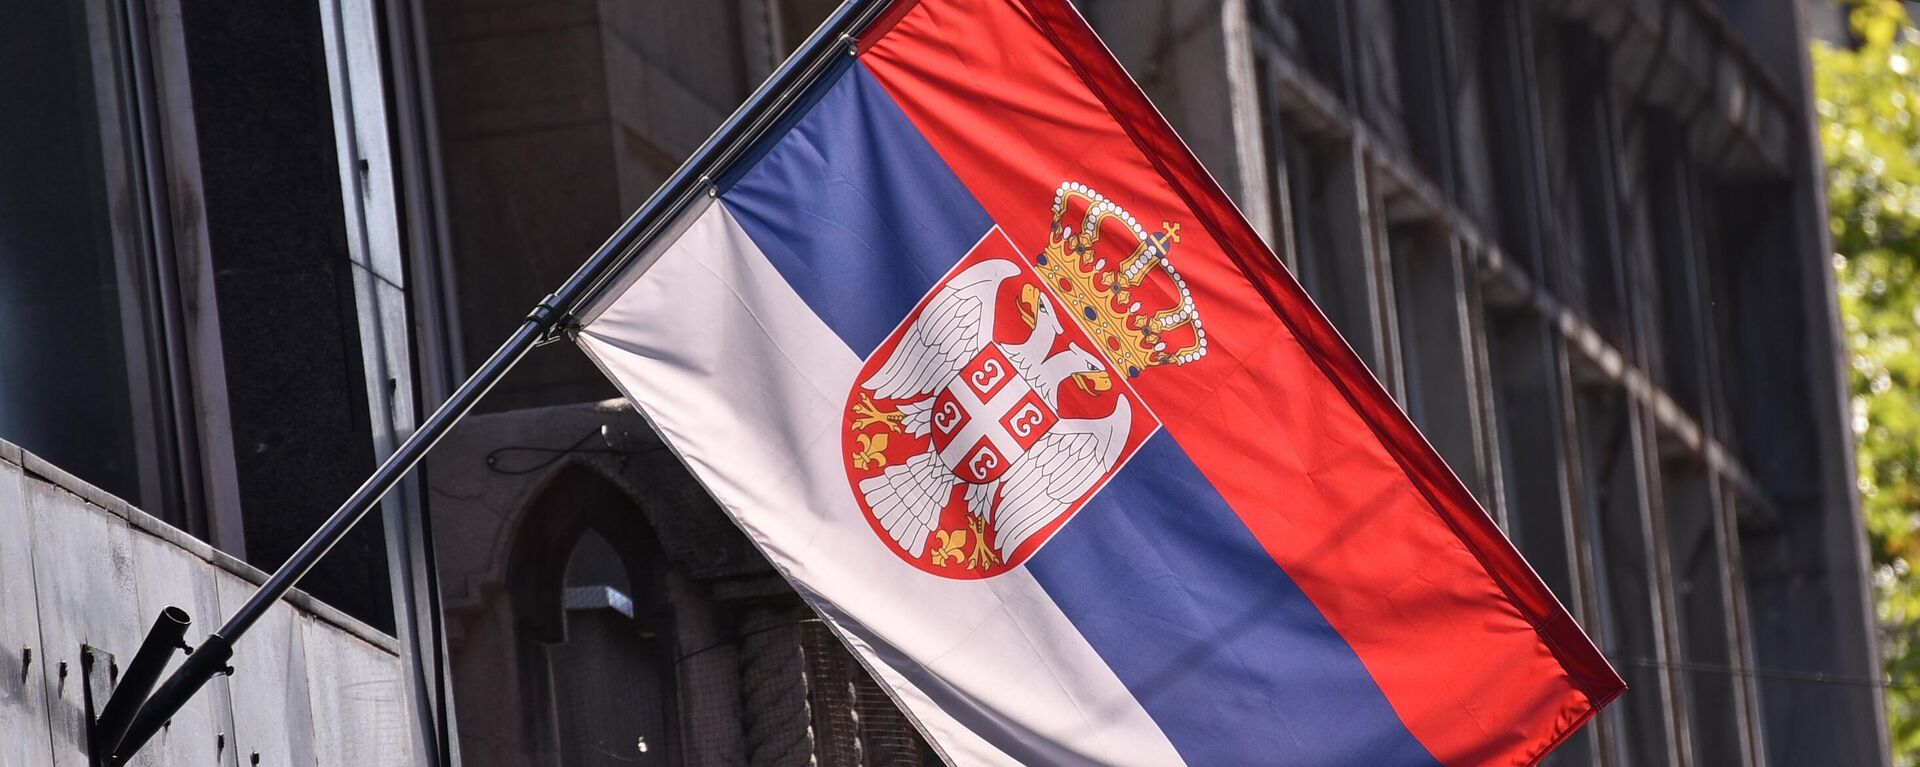 Srbija osvanula u bojama srpske zastave - Sputnik Srbija, 1920, 21.12.2021